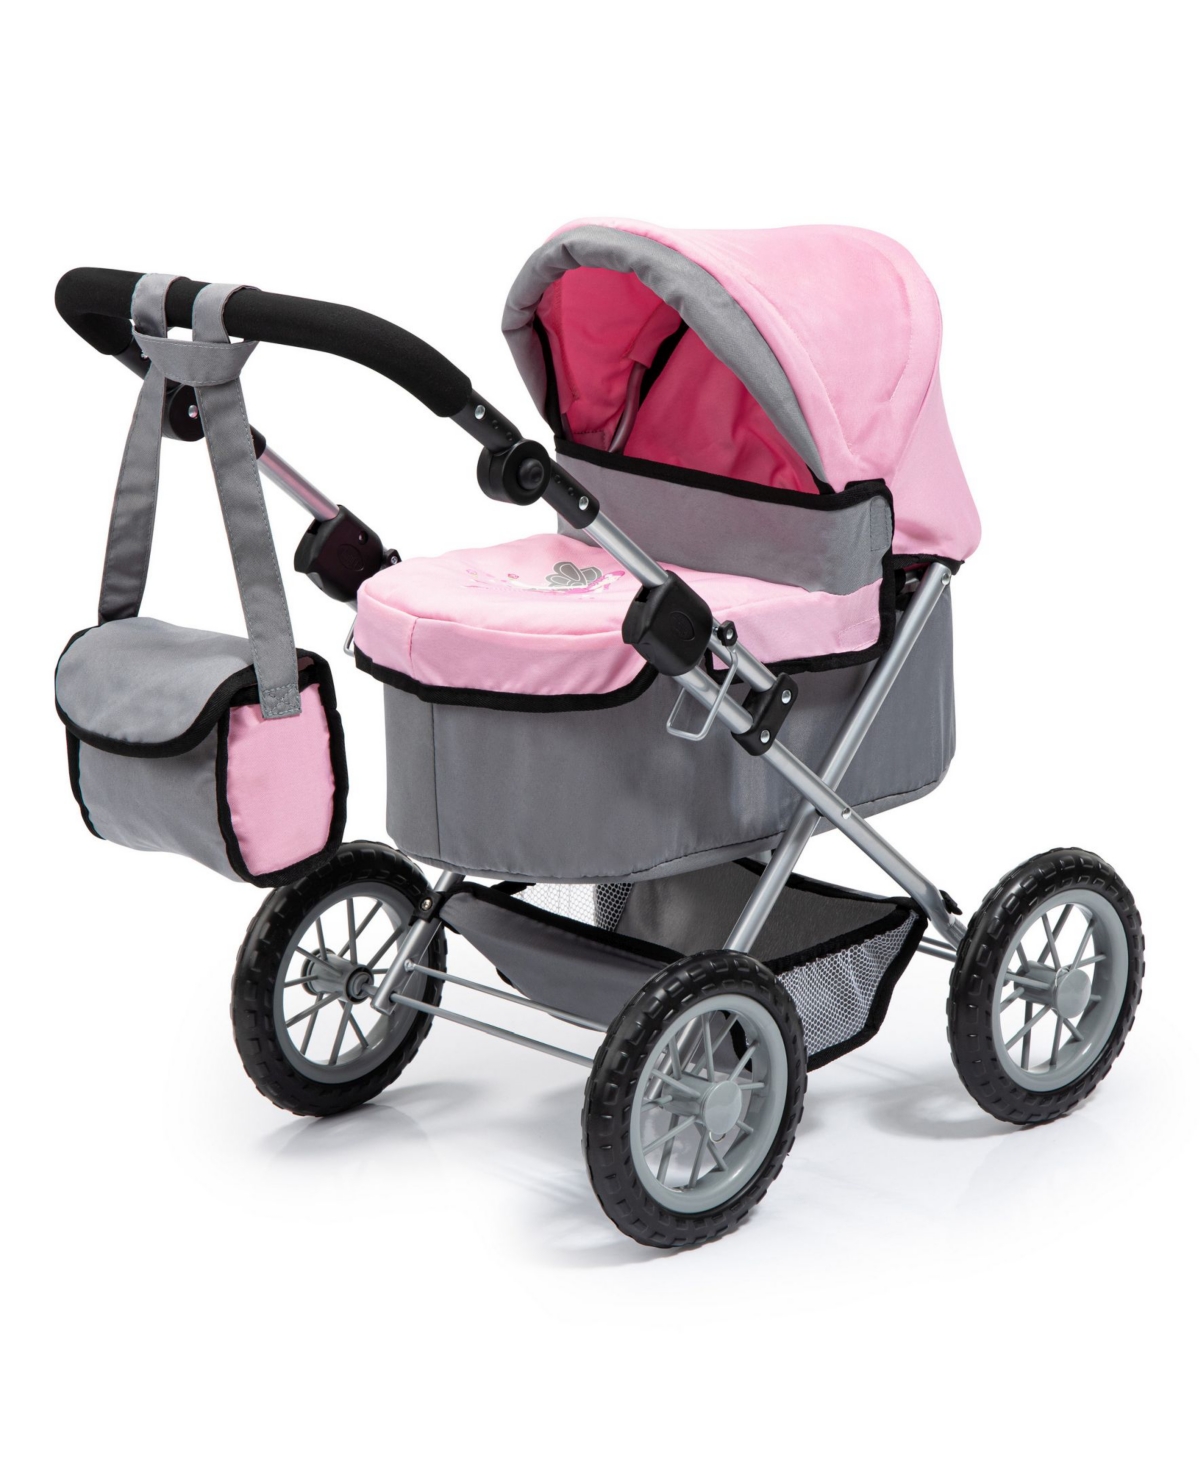 Redbox Trendy Pram Stroller For Toy Baby Dolls In Gray,pink